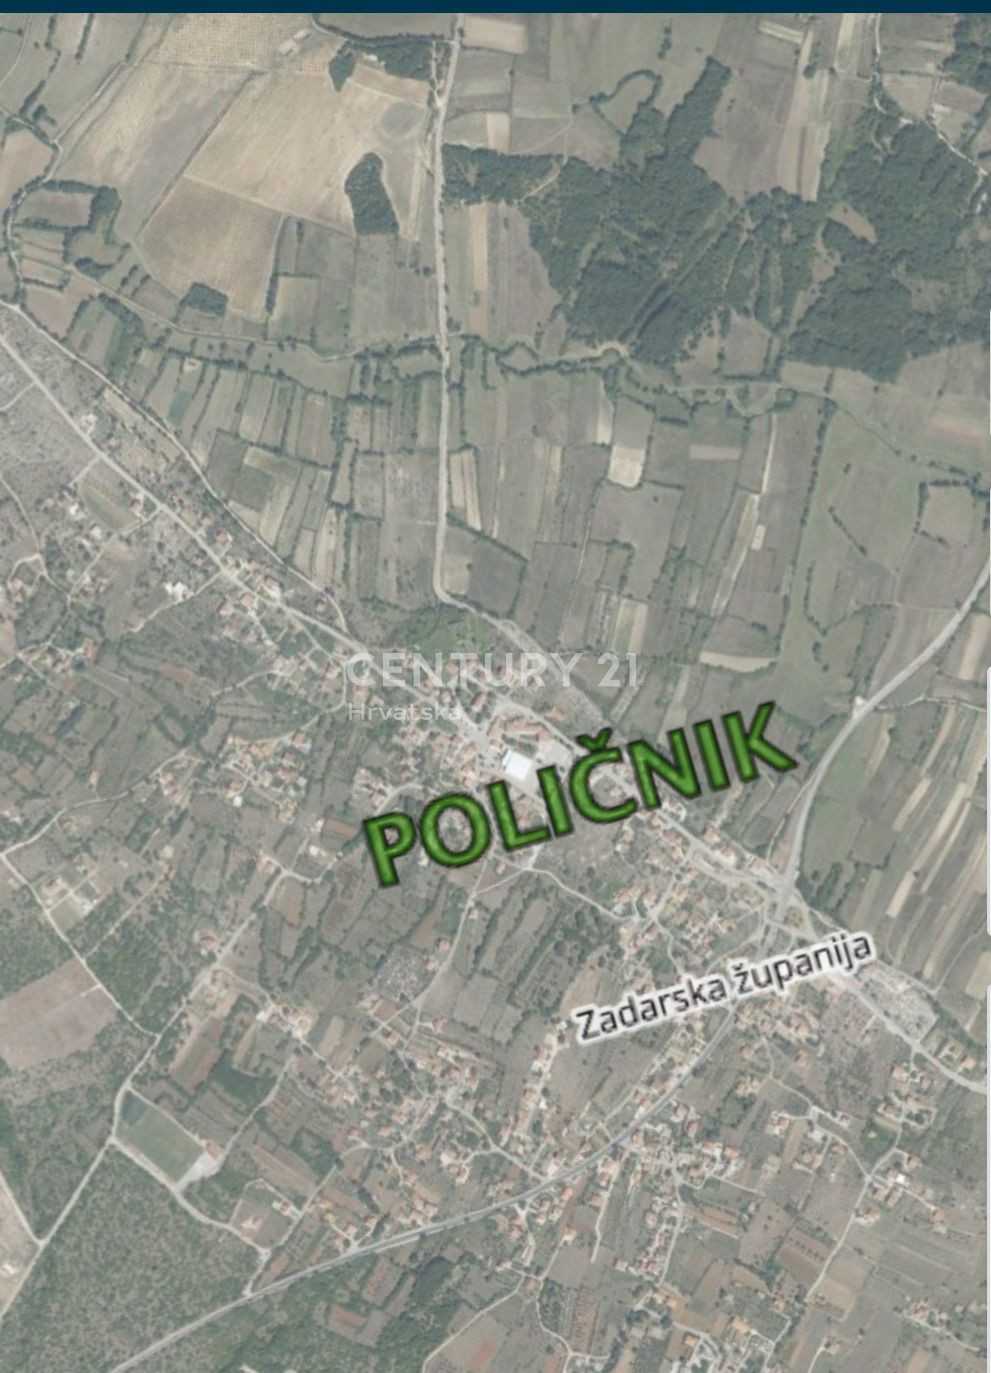 Sbarcare nel Policnik, Zara Zupanija 12304882